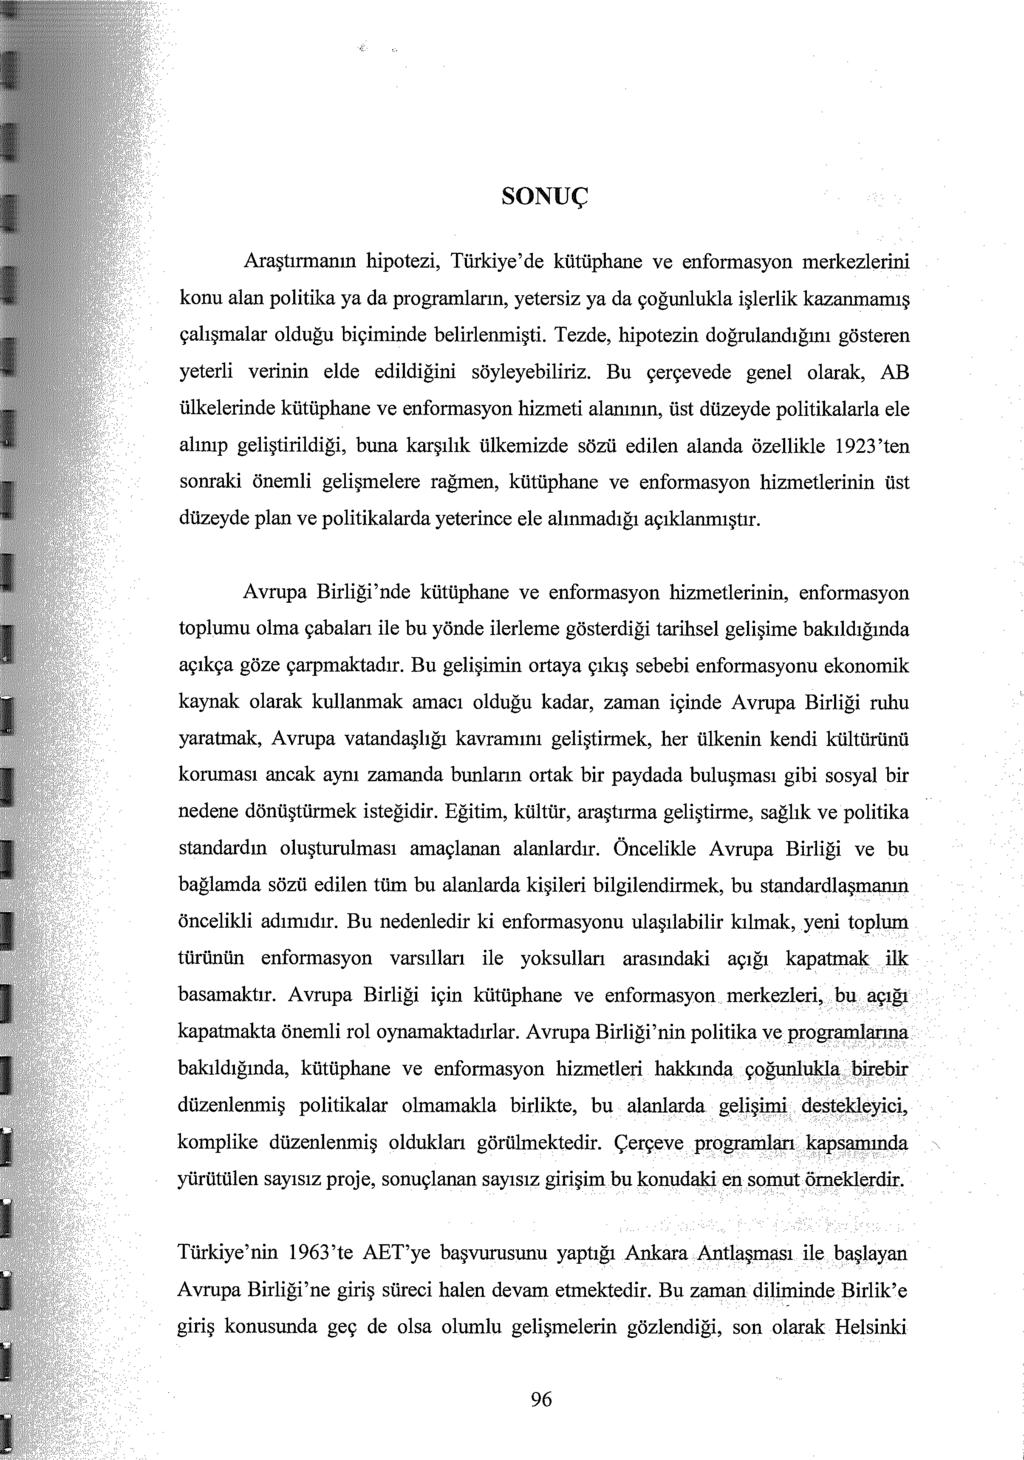 SONUÇ Araştırmanın hipotezi, Türkiye'de kütüphane ve enformasyon merl<:y:z:j~rmj. konu alan politika ya da programların, yetersiz ya da çoğunlukla işlerlik kazan.